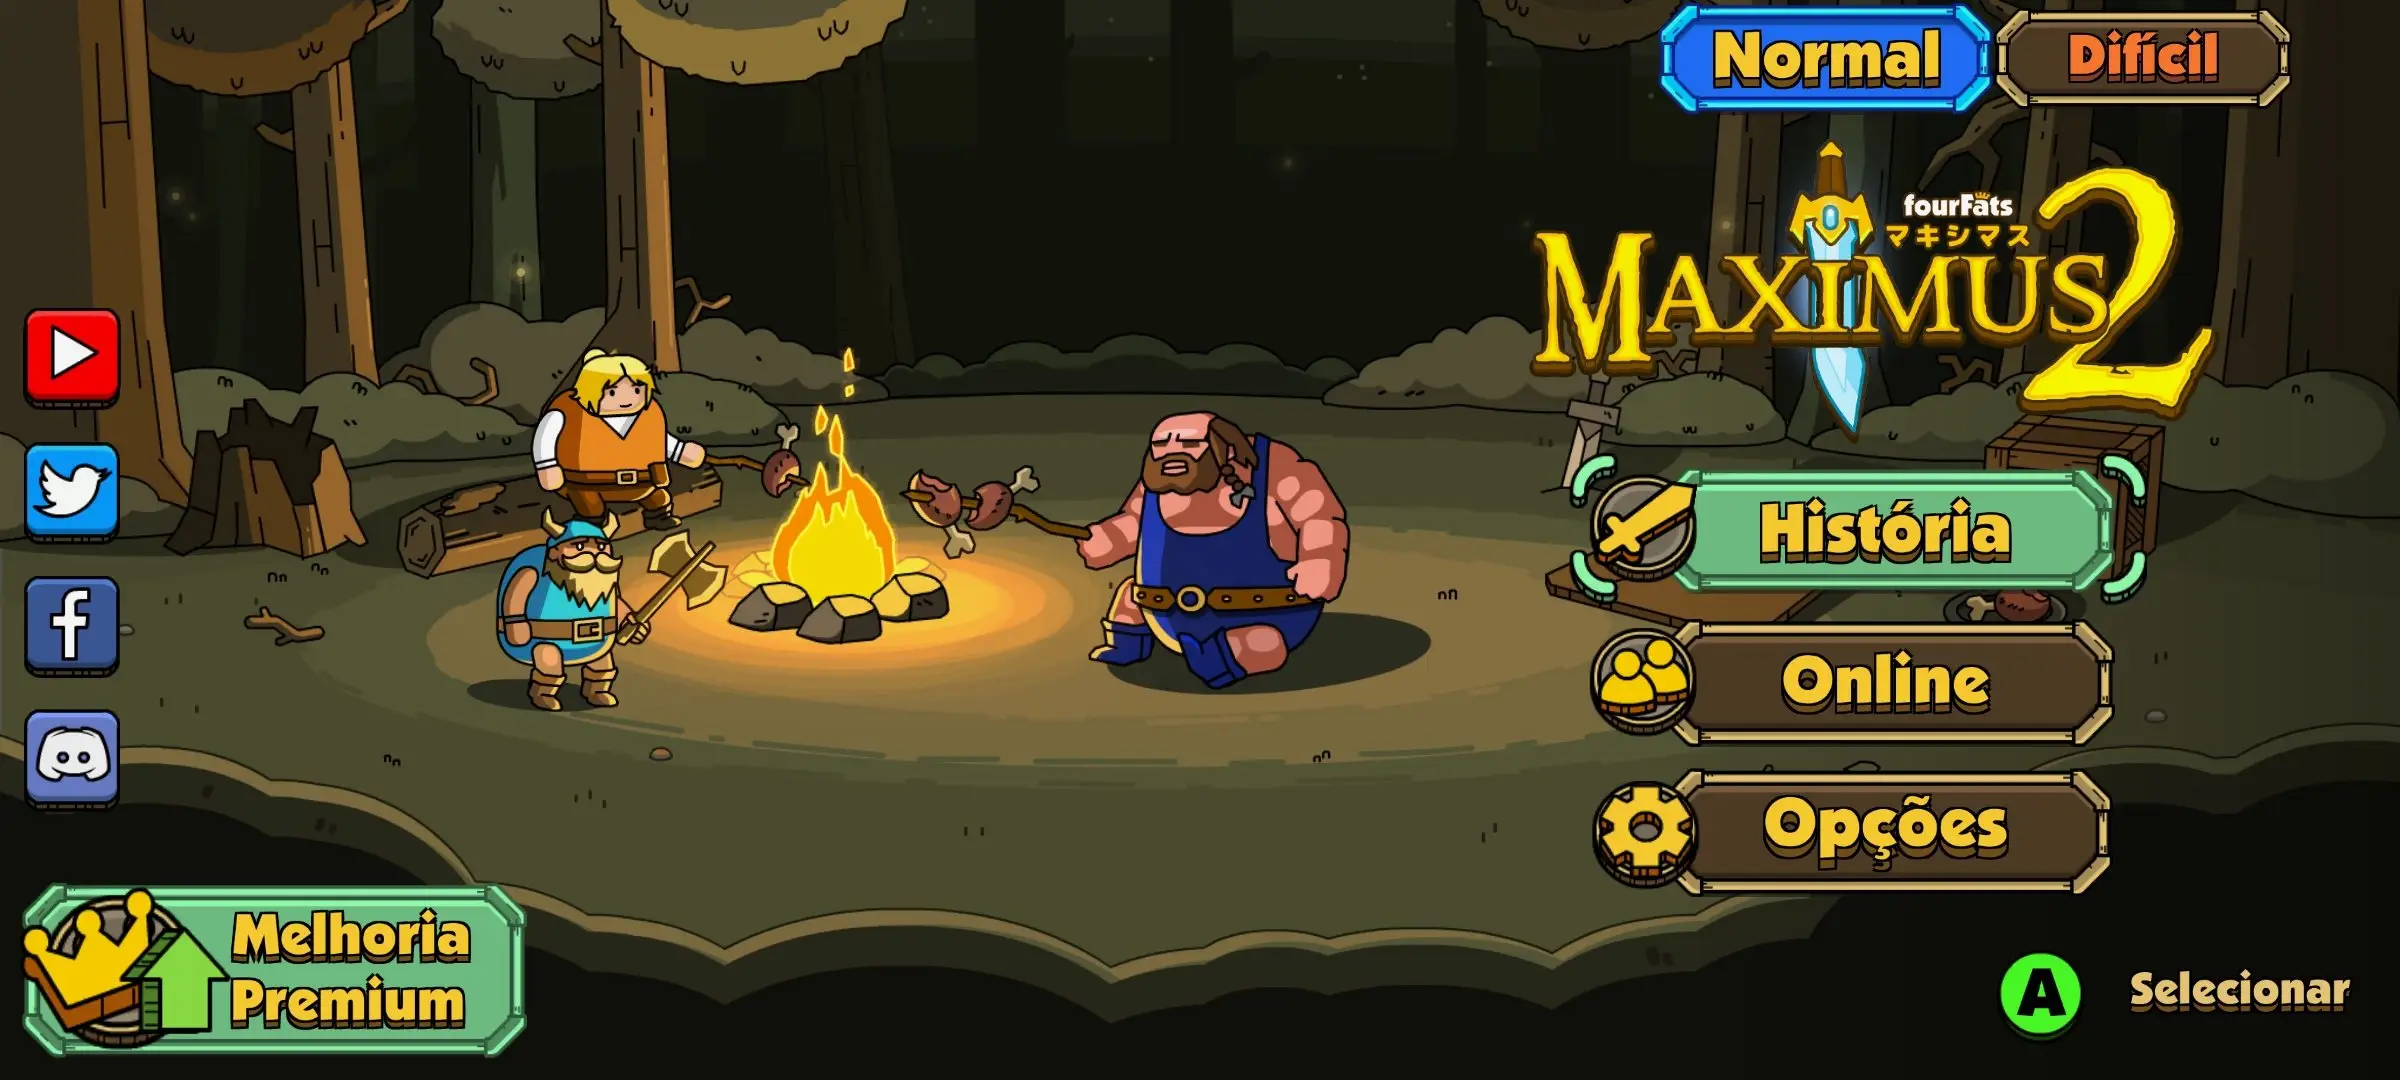 Maximus-2-android-ios-jogo-offline-gratis Maximus 2: novo jogo offline é uma homenagem a Golden Axe